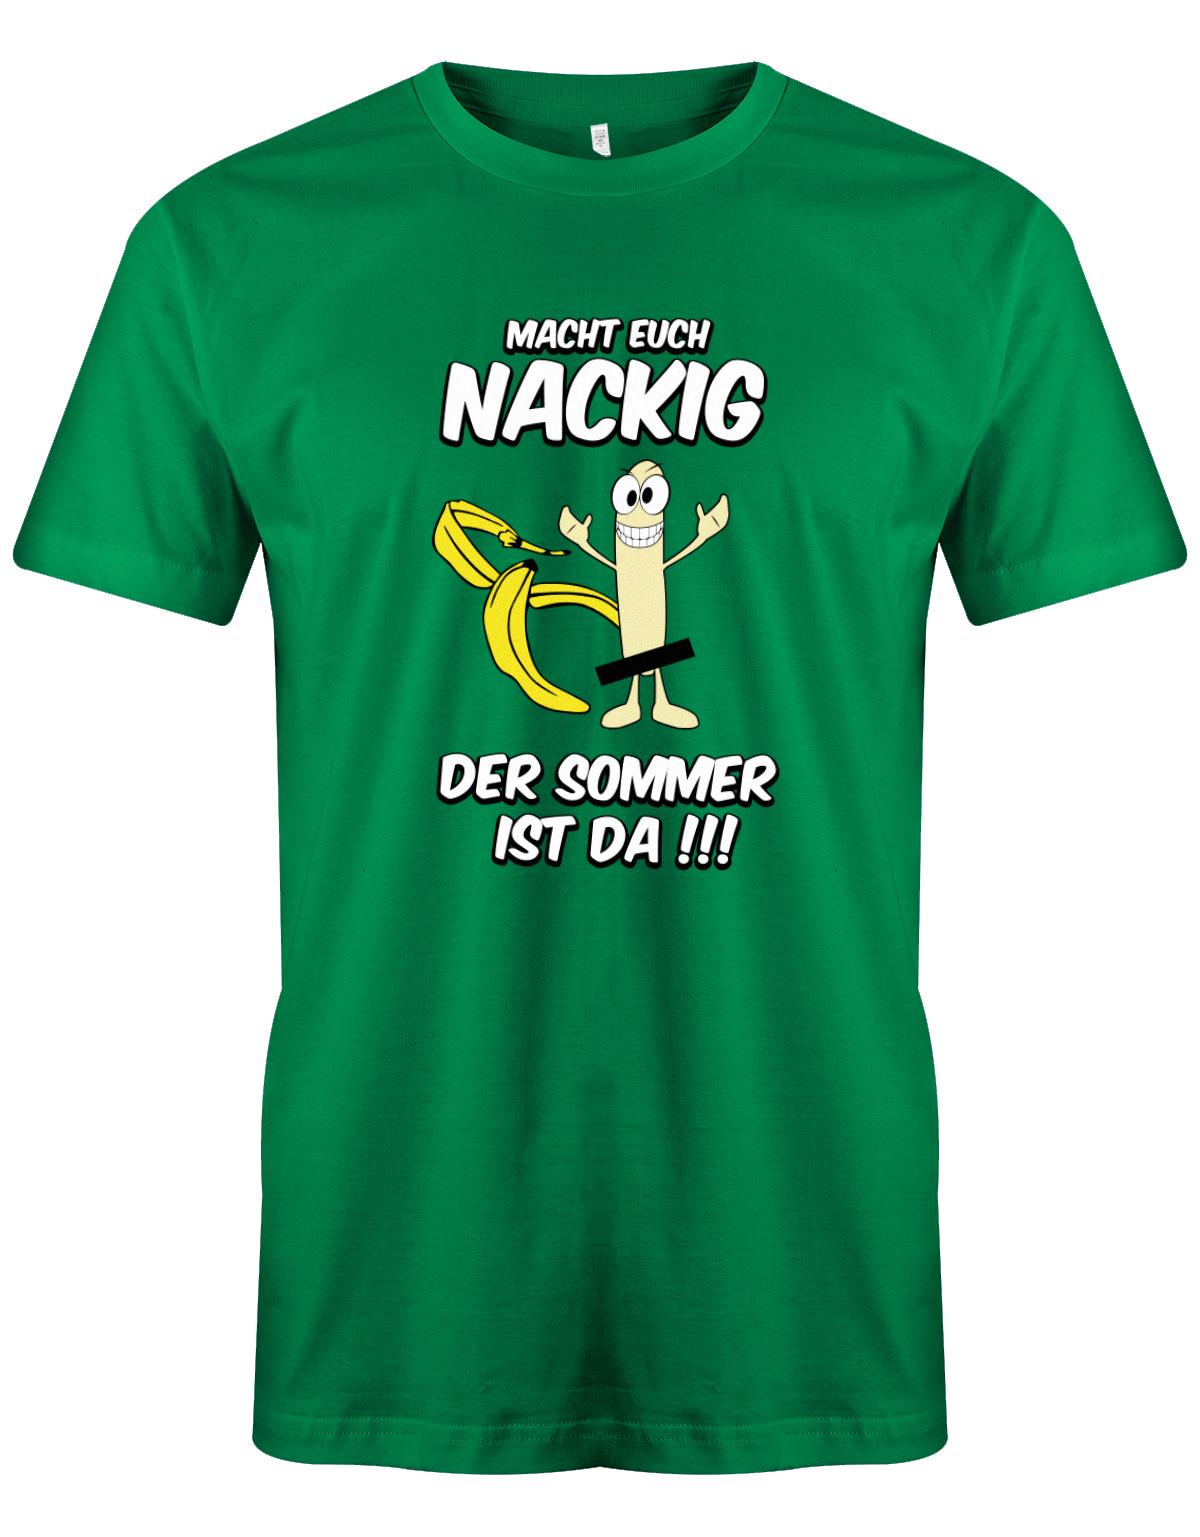 Macht-euch-nackig-dder-Sommer-ist-da-Herren-Shirt-Gr-n